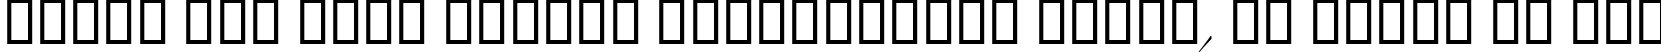 Пример написания шрифтом LinotypeZapfino Four текста на русском